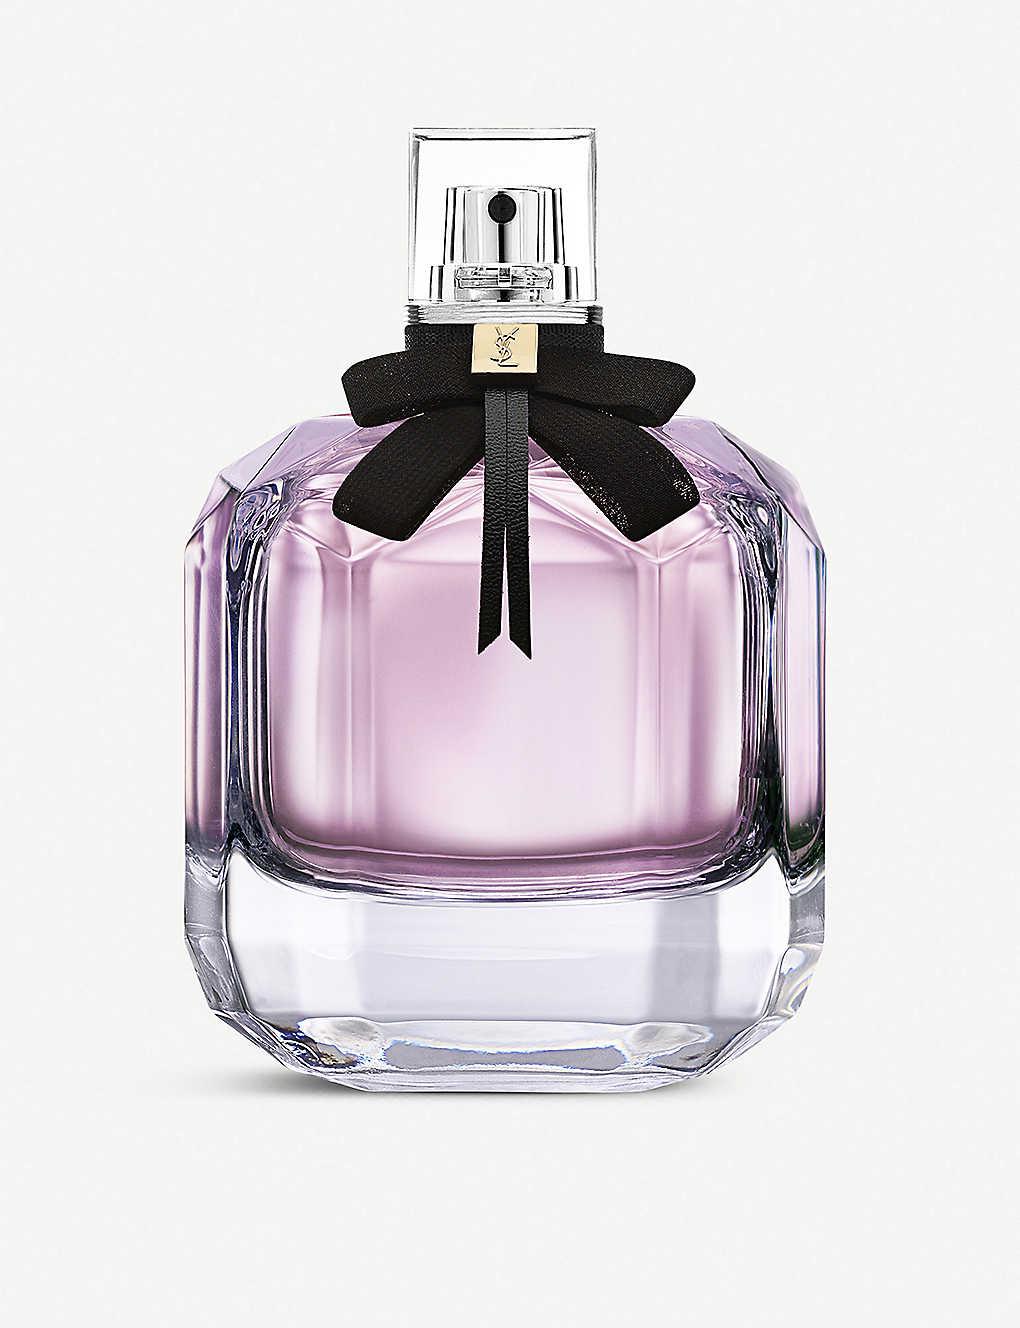 Yves Saint Laurent Mon Paris Eau De Parfum 50ml (Imperfect Box)